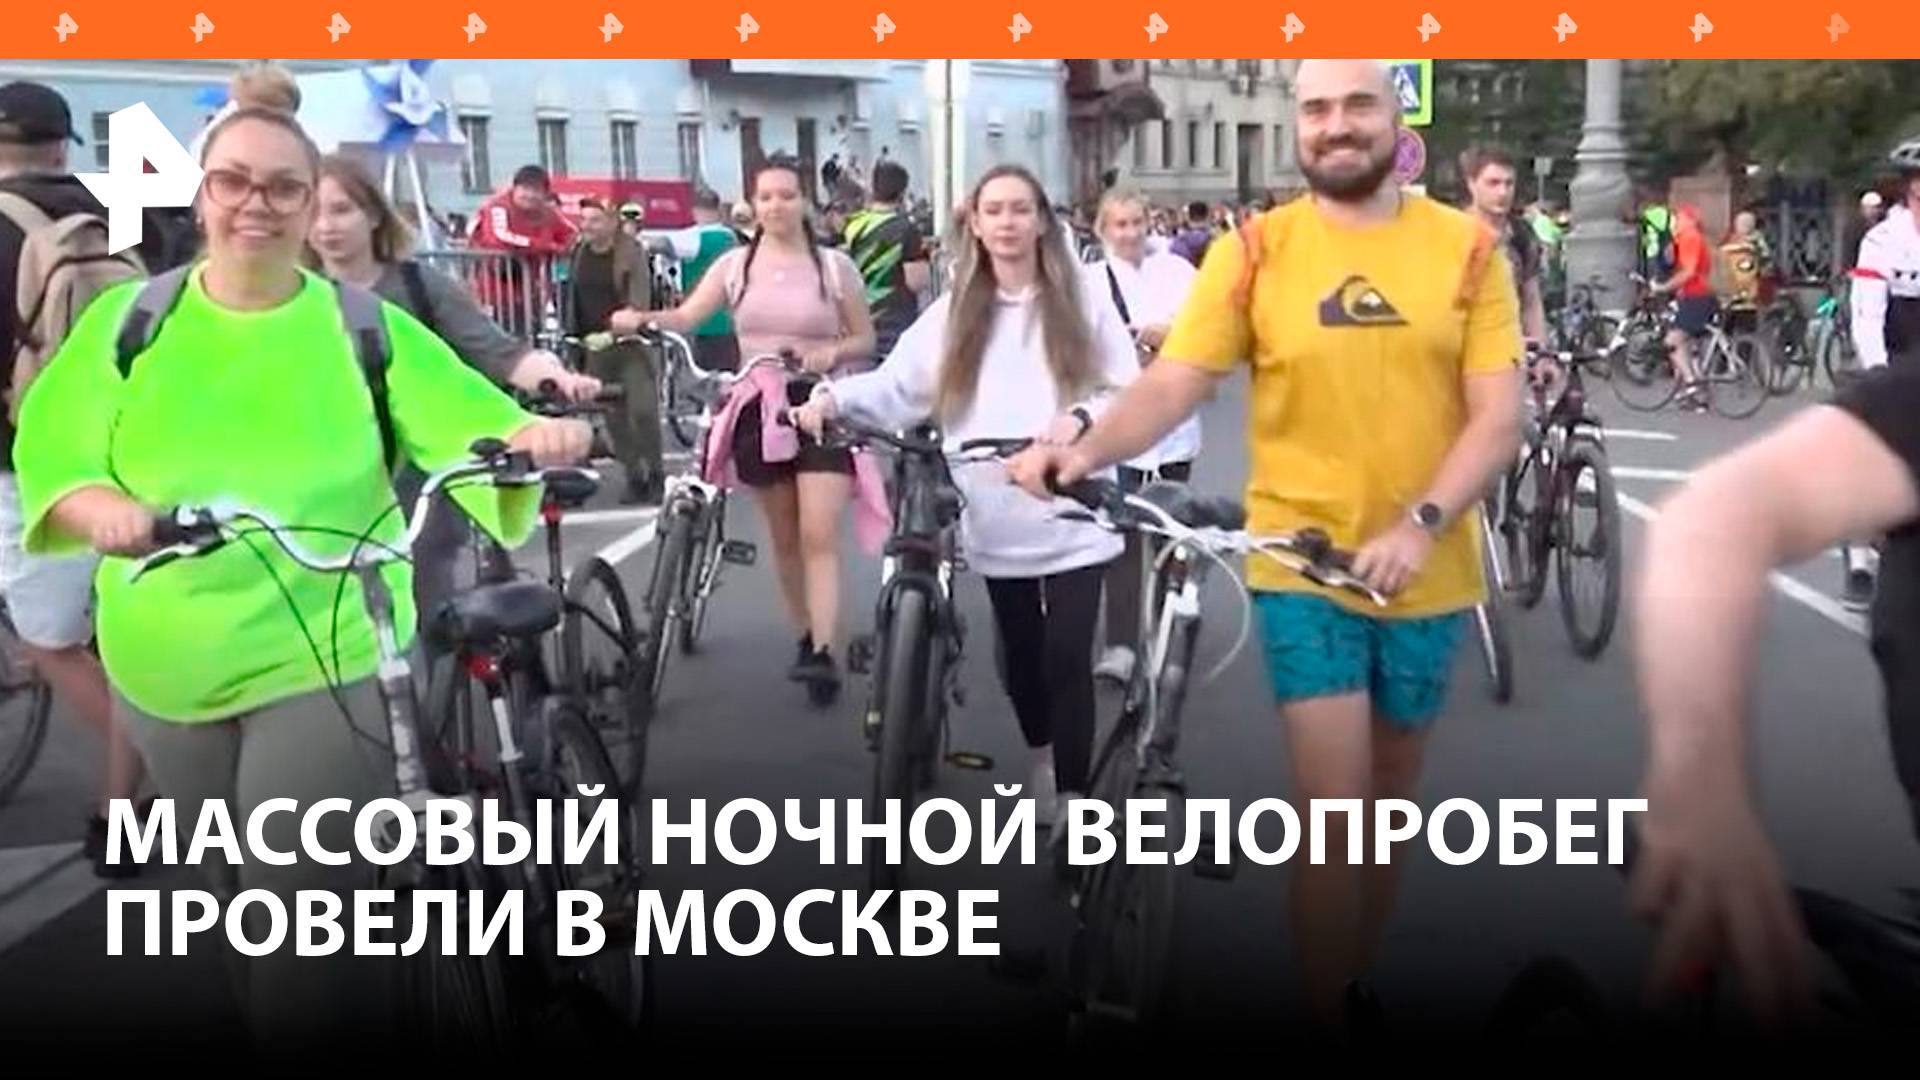 Я буду долго гнать велосипед: десятки тысяч человек приняли участие в ночном велофестивале в Москве